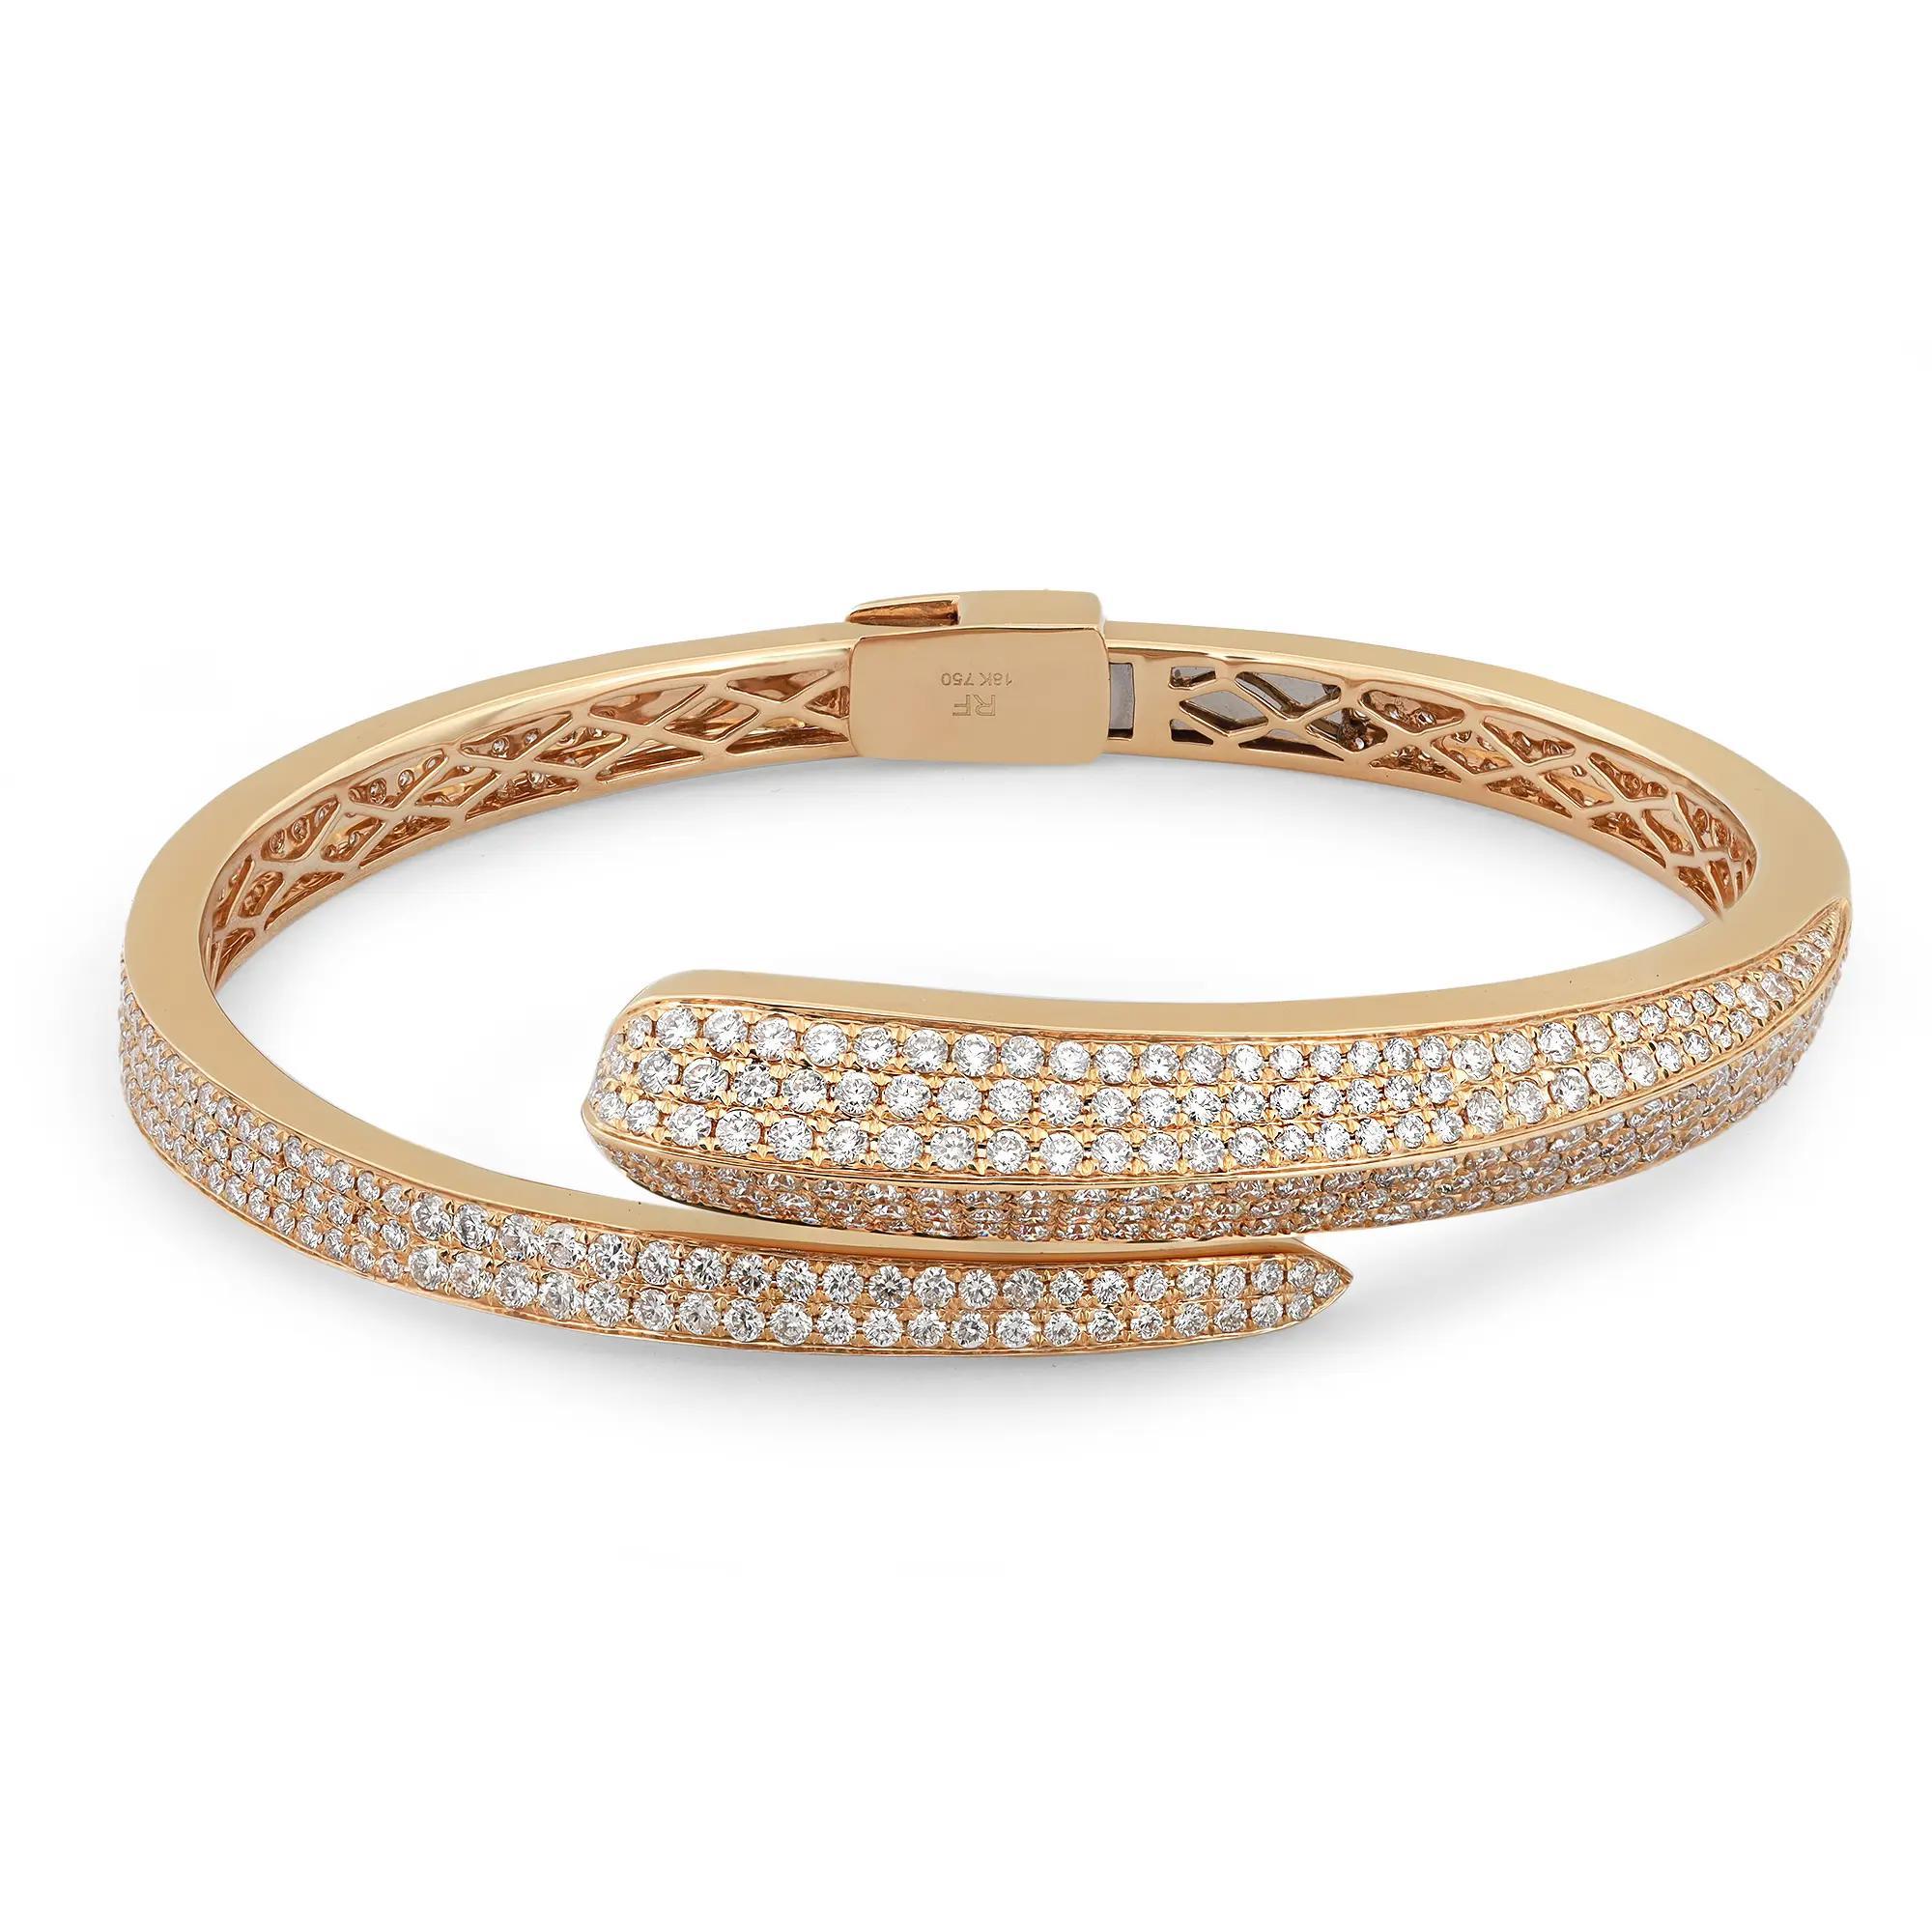 Lassen Sie Ihren Stil erstrahlen mit diesem ausgefallenen und eleganten Spiralarmband mit Diamanten. Er ist mit runden Diamanten im Brillantschliff mit einem Gewicht von 4.31 Karat ausgefasst. Gefertigt aus hochglanzpoliertem 18 Karat Gelbgold.